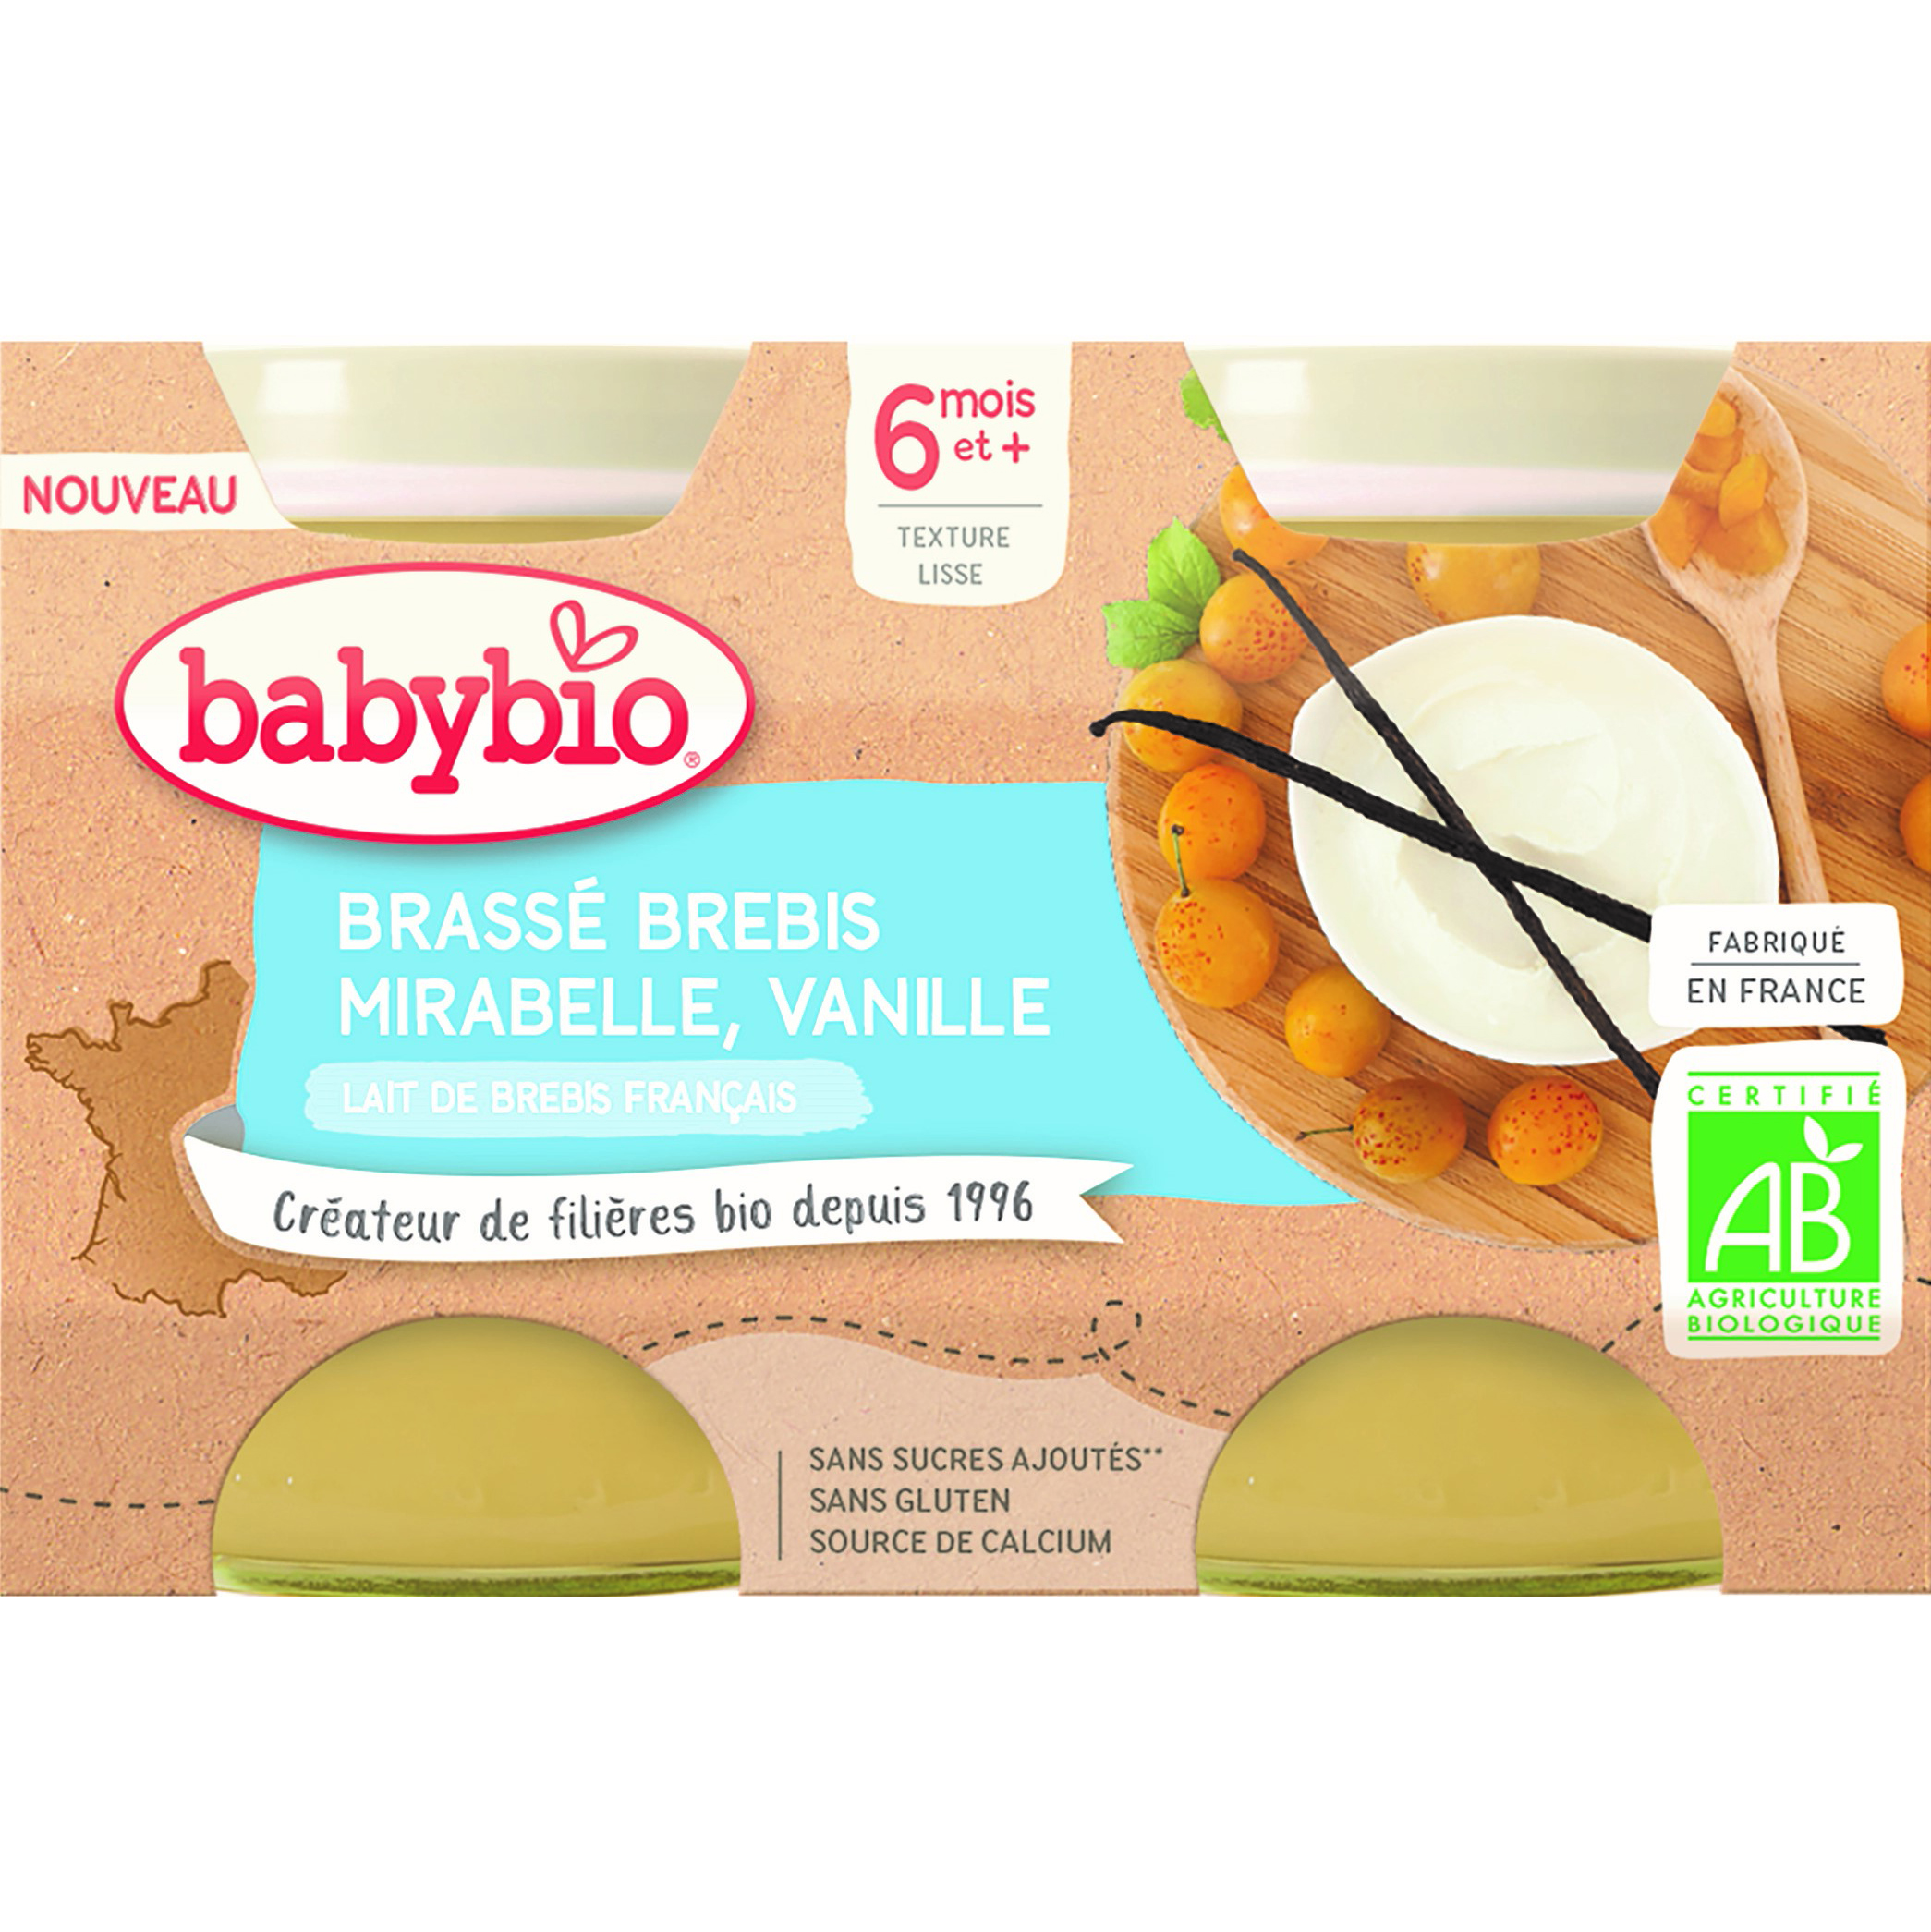 Pack yaourt brassé au lait entier de vache pour bébé dès 6 mois - FRANCE  BéBé BIO